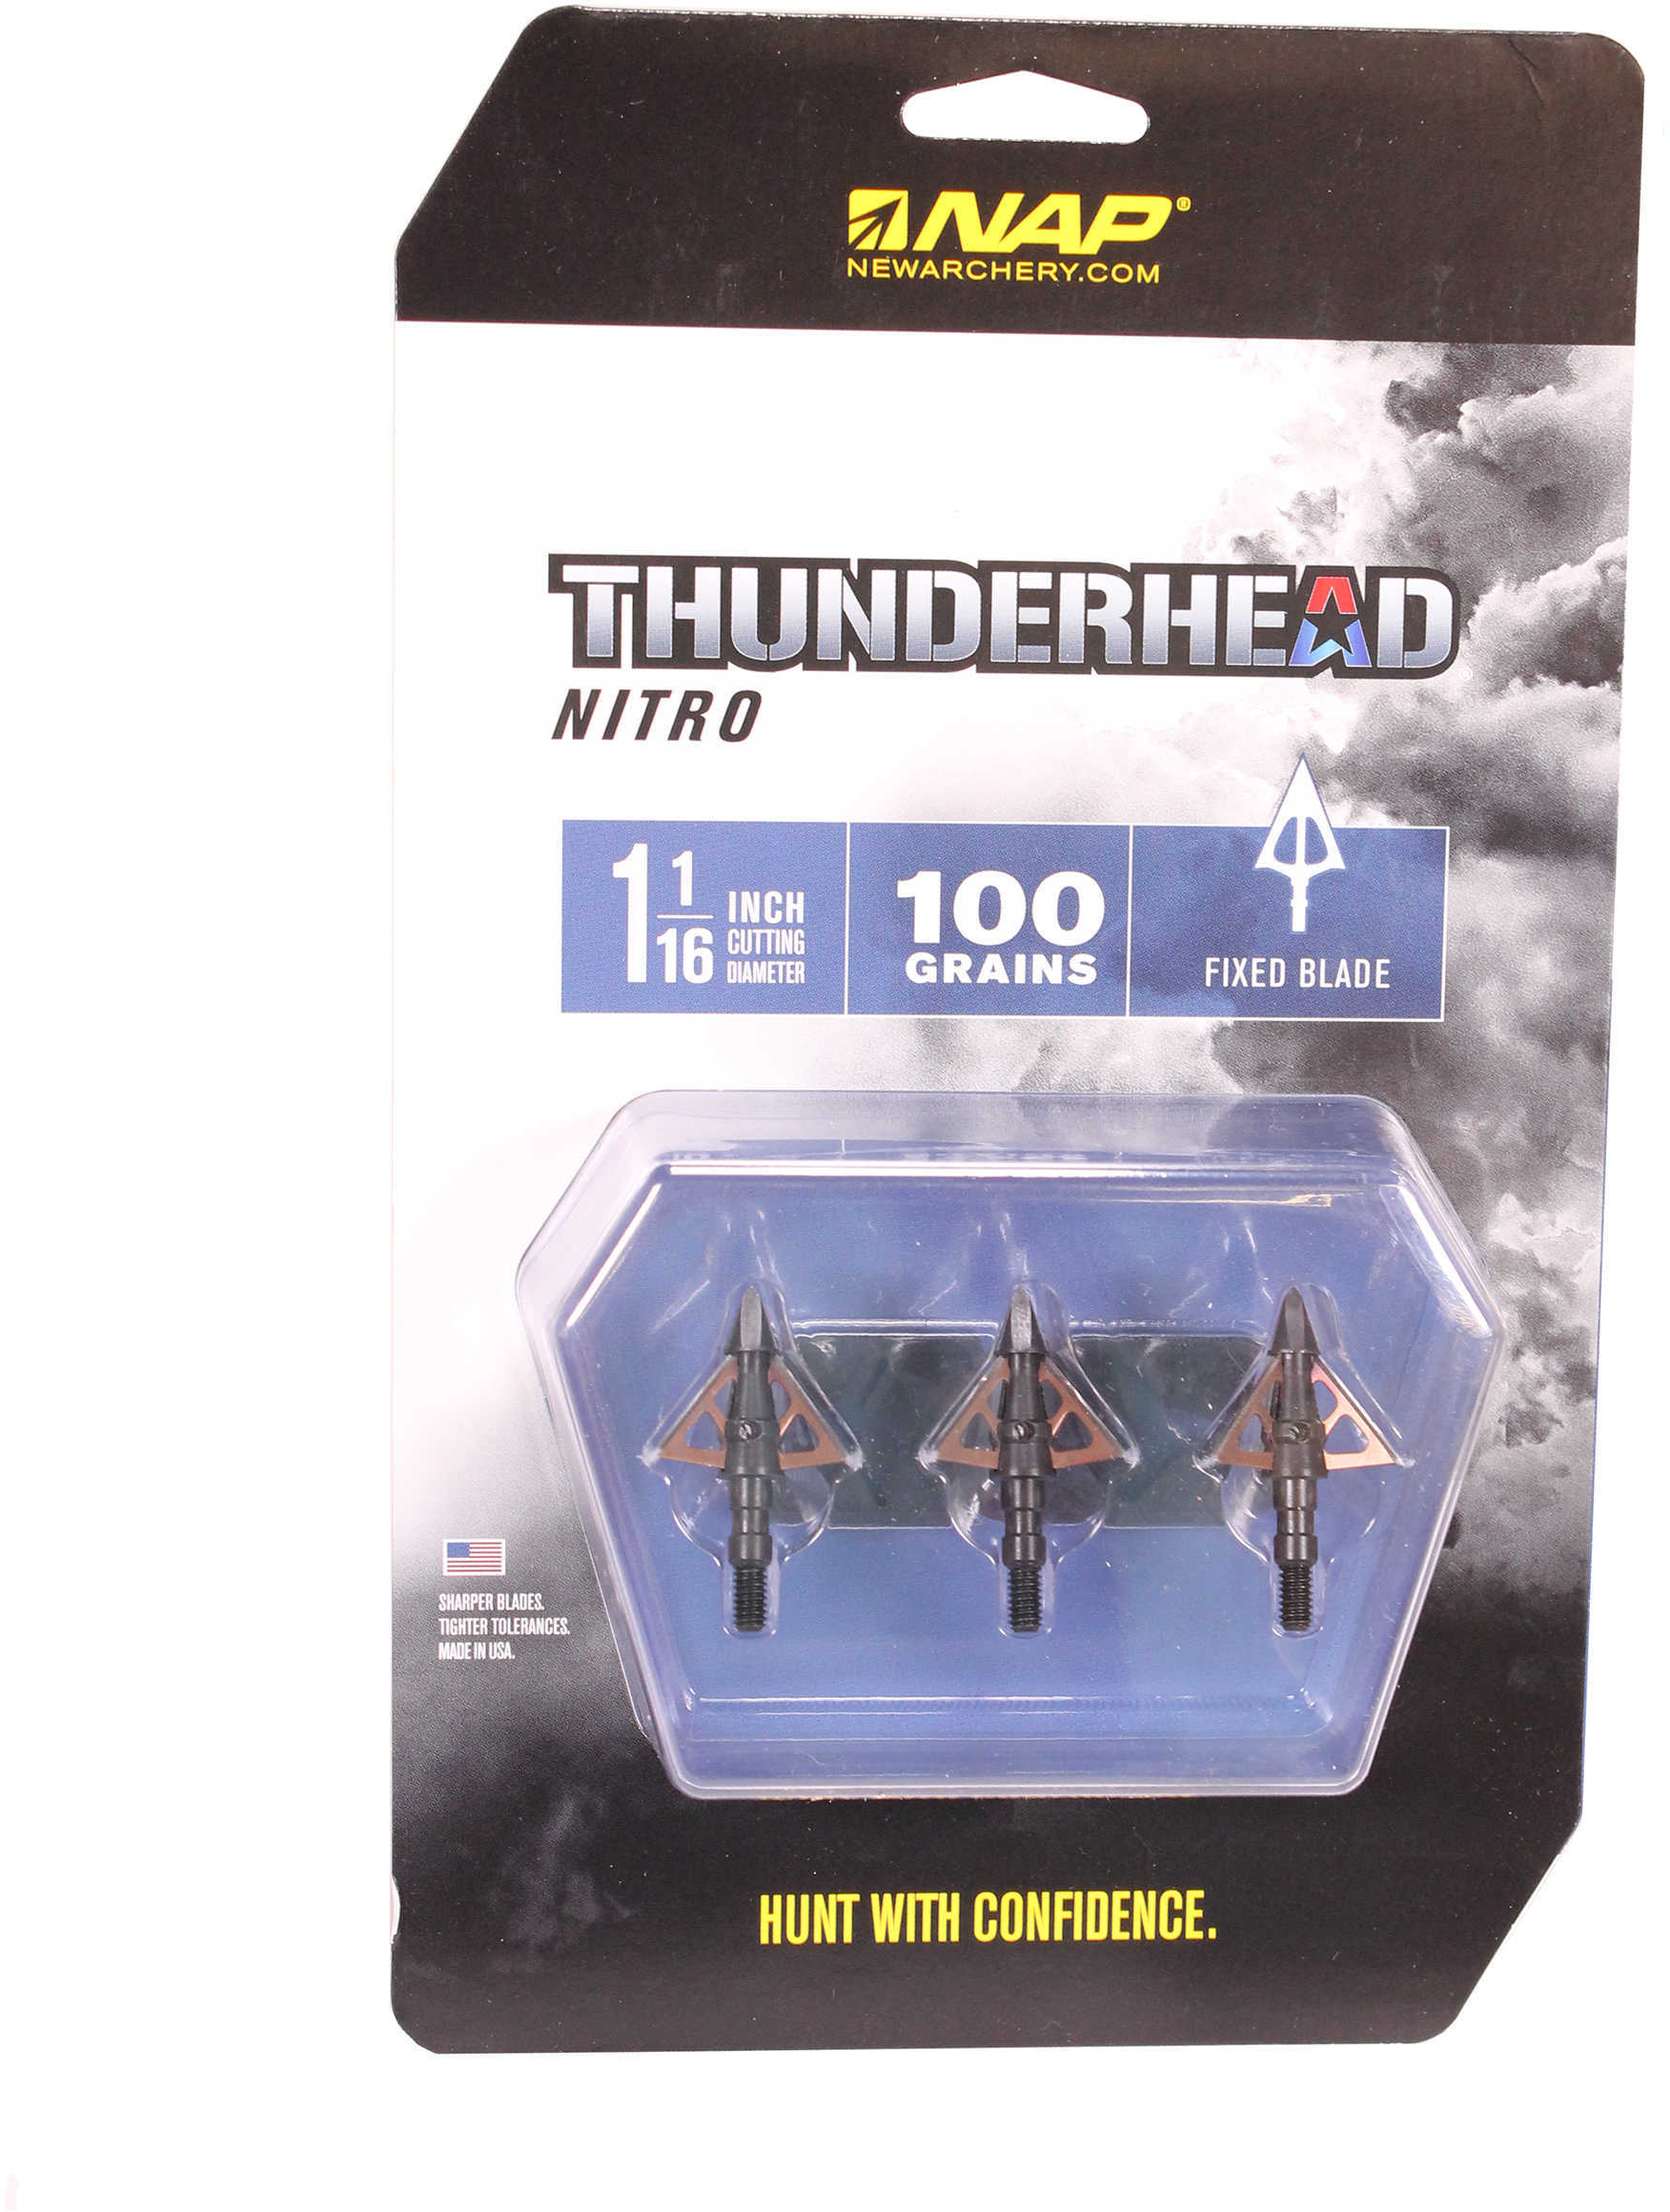 New Archery NAP Thunderhead Nitro Broadhead 100 Grain 3 pk Model: 60-036